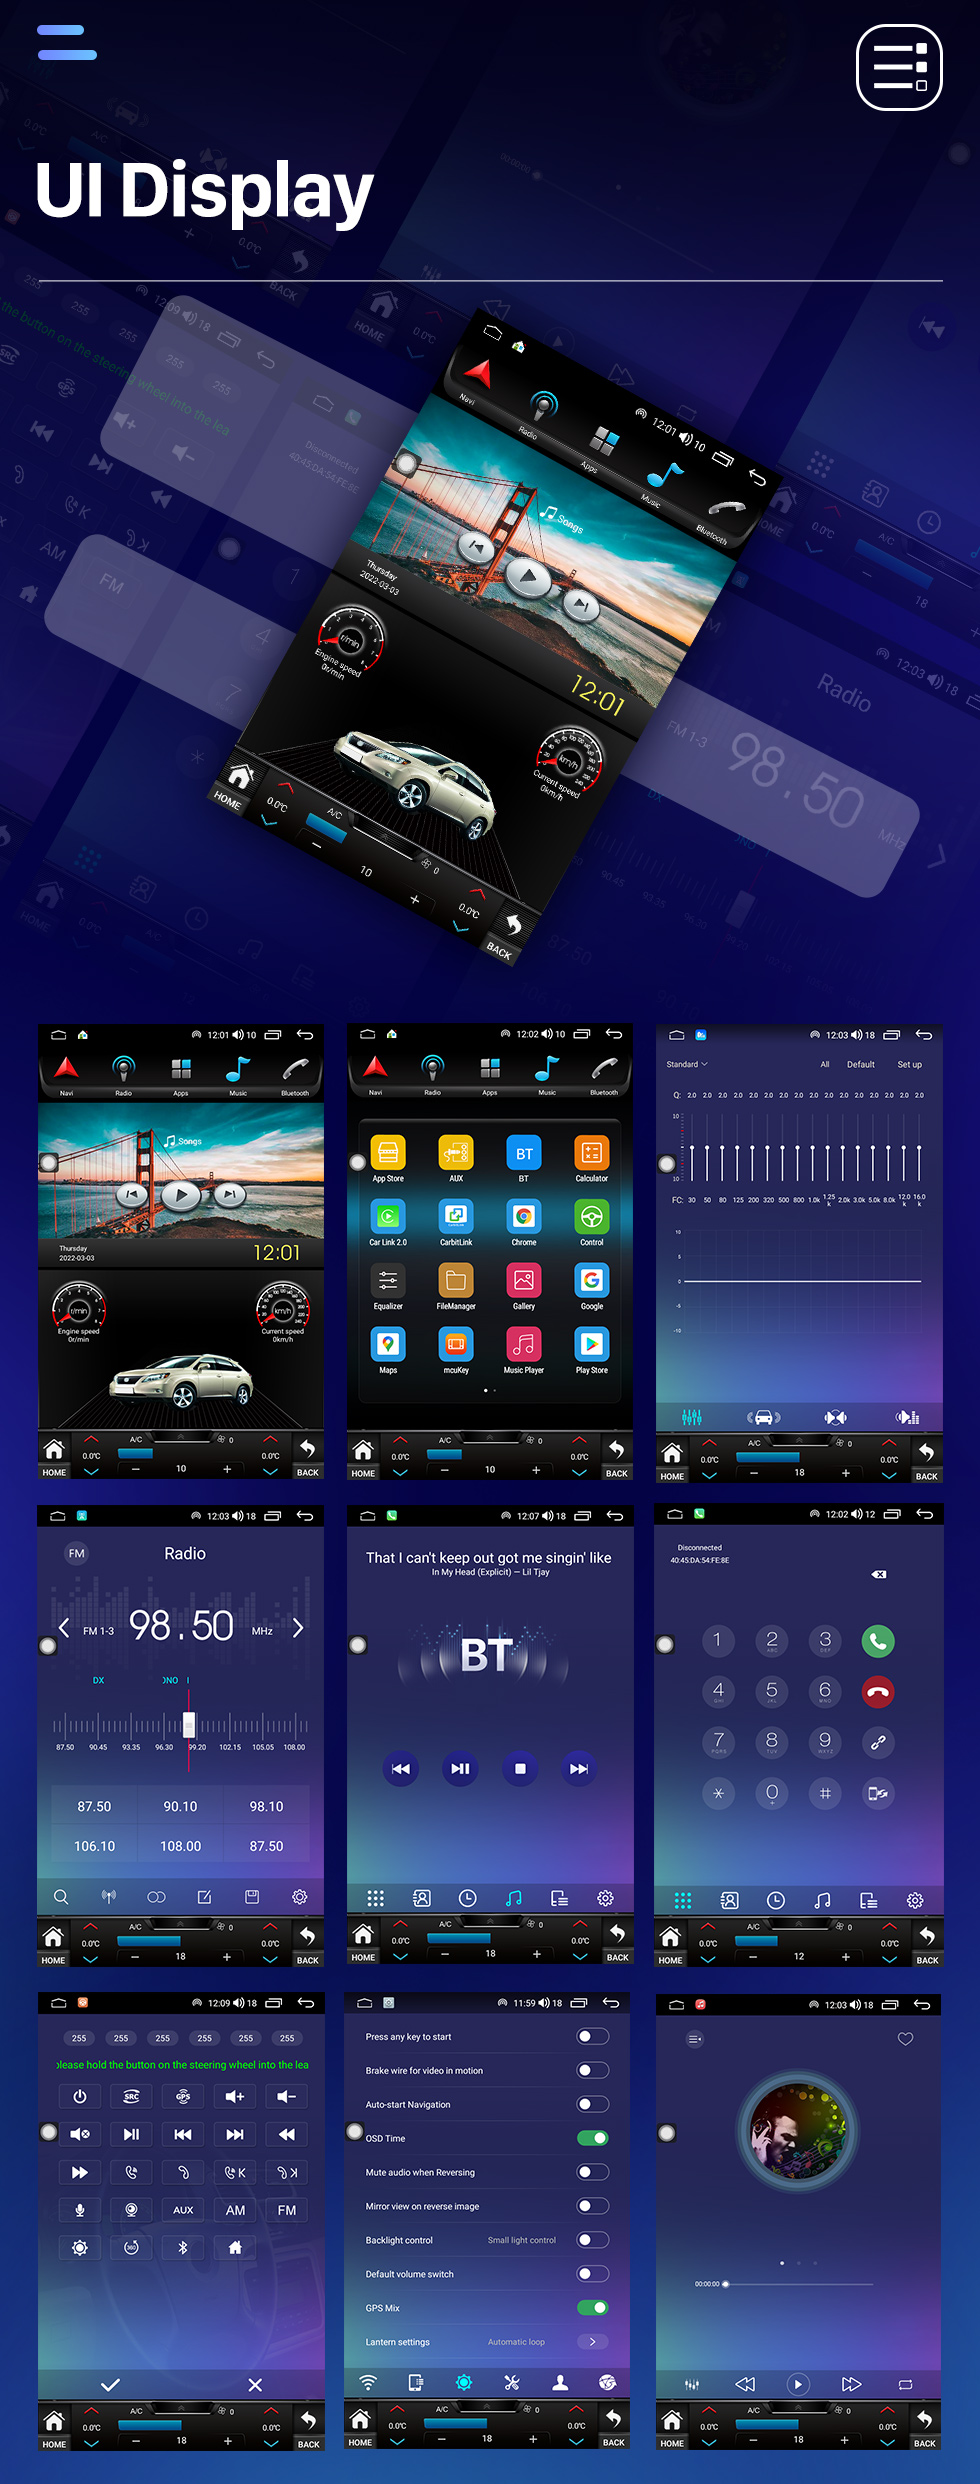 Seicane Tudo em um Android 10.0 9,7 polegadas 2008-2012 Chevrolet Epica Rádio de navegação GPS com tela sensível ao toque Carplay Suporte Bluetooth Câmera AHD